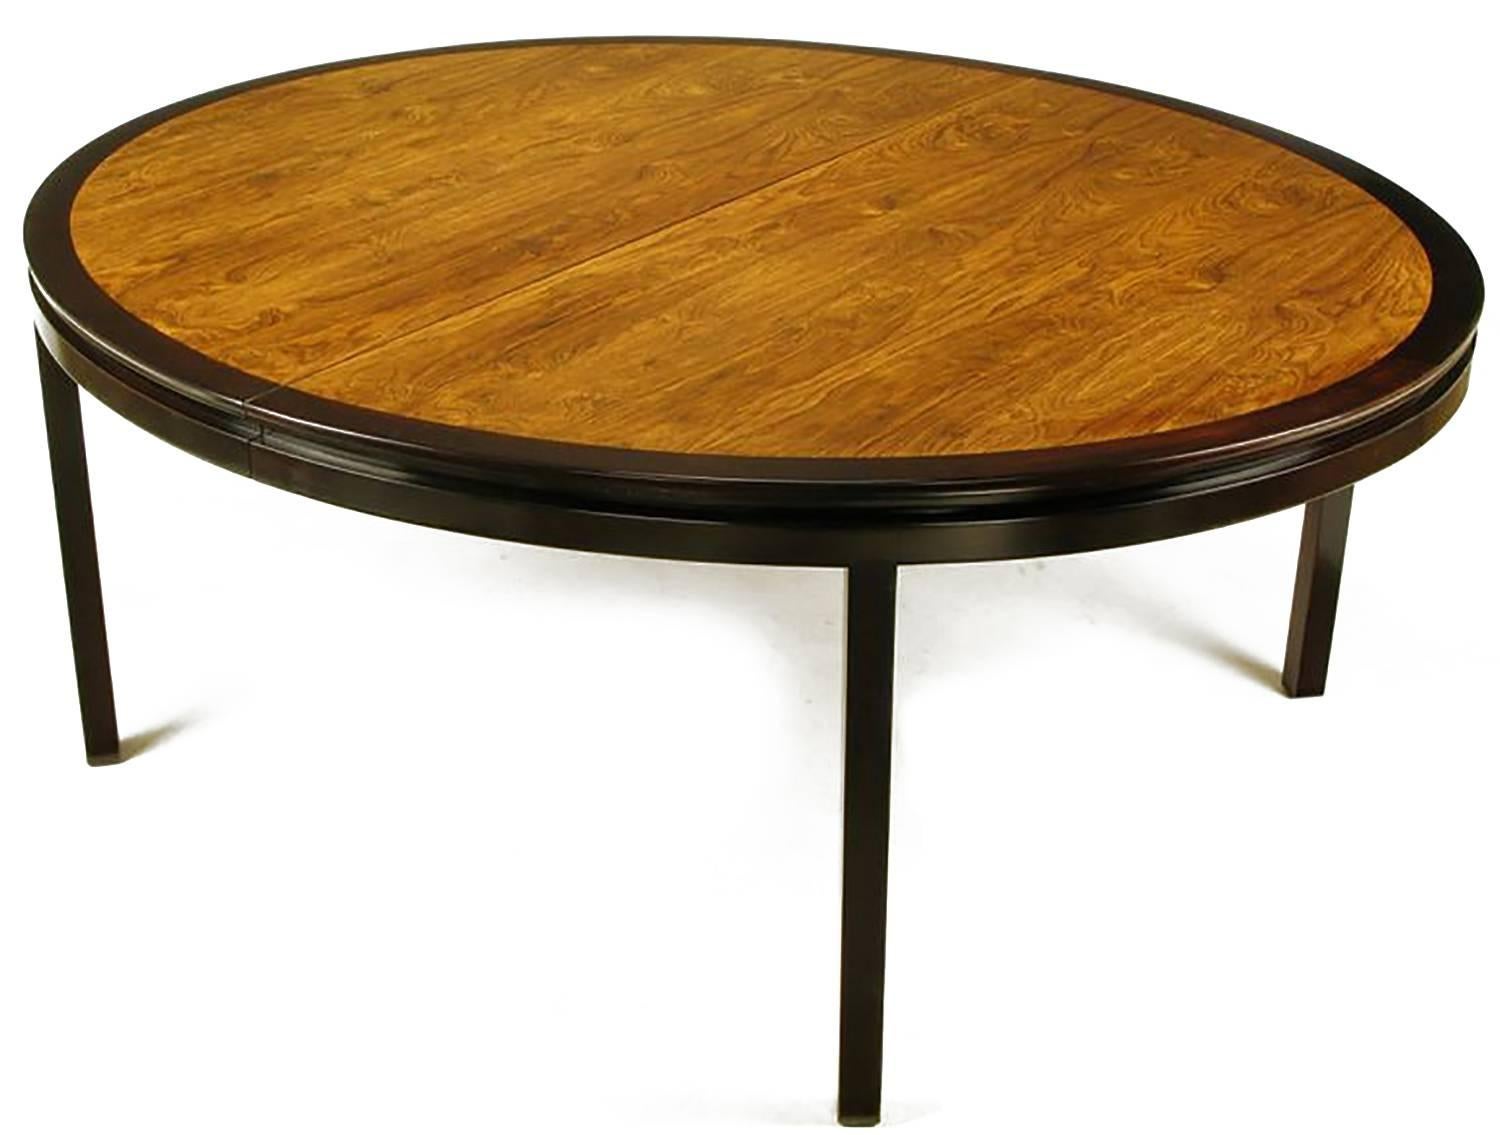 Hervorragender maßgefertigter großer ovaler Esstisch, entworfen von Edward Wormley für Dunbar. Dunkel gebeizte Mahagoni-Einfassung, eingeschnittene Schürze und quadratische Beine. Die eingelegte Decke aus Palisanderfurnier ist wunderschön gemasert.